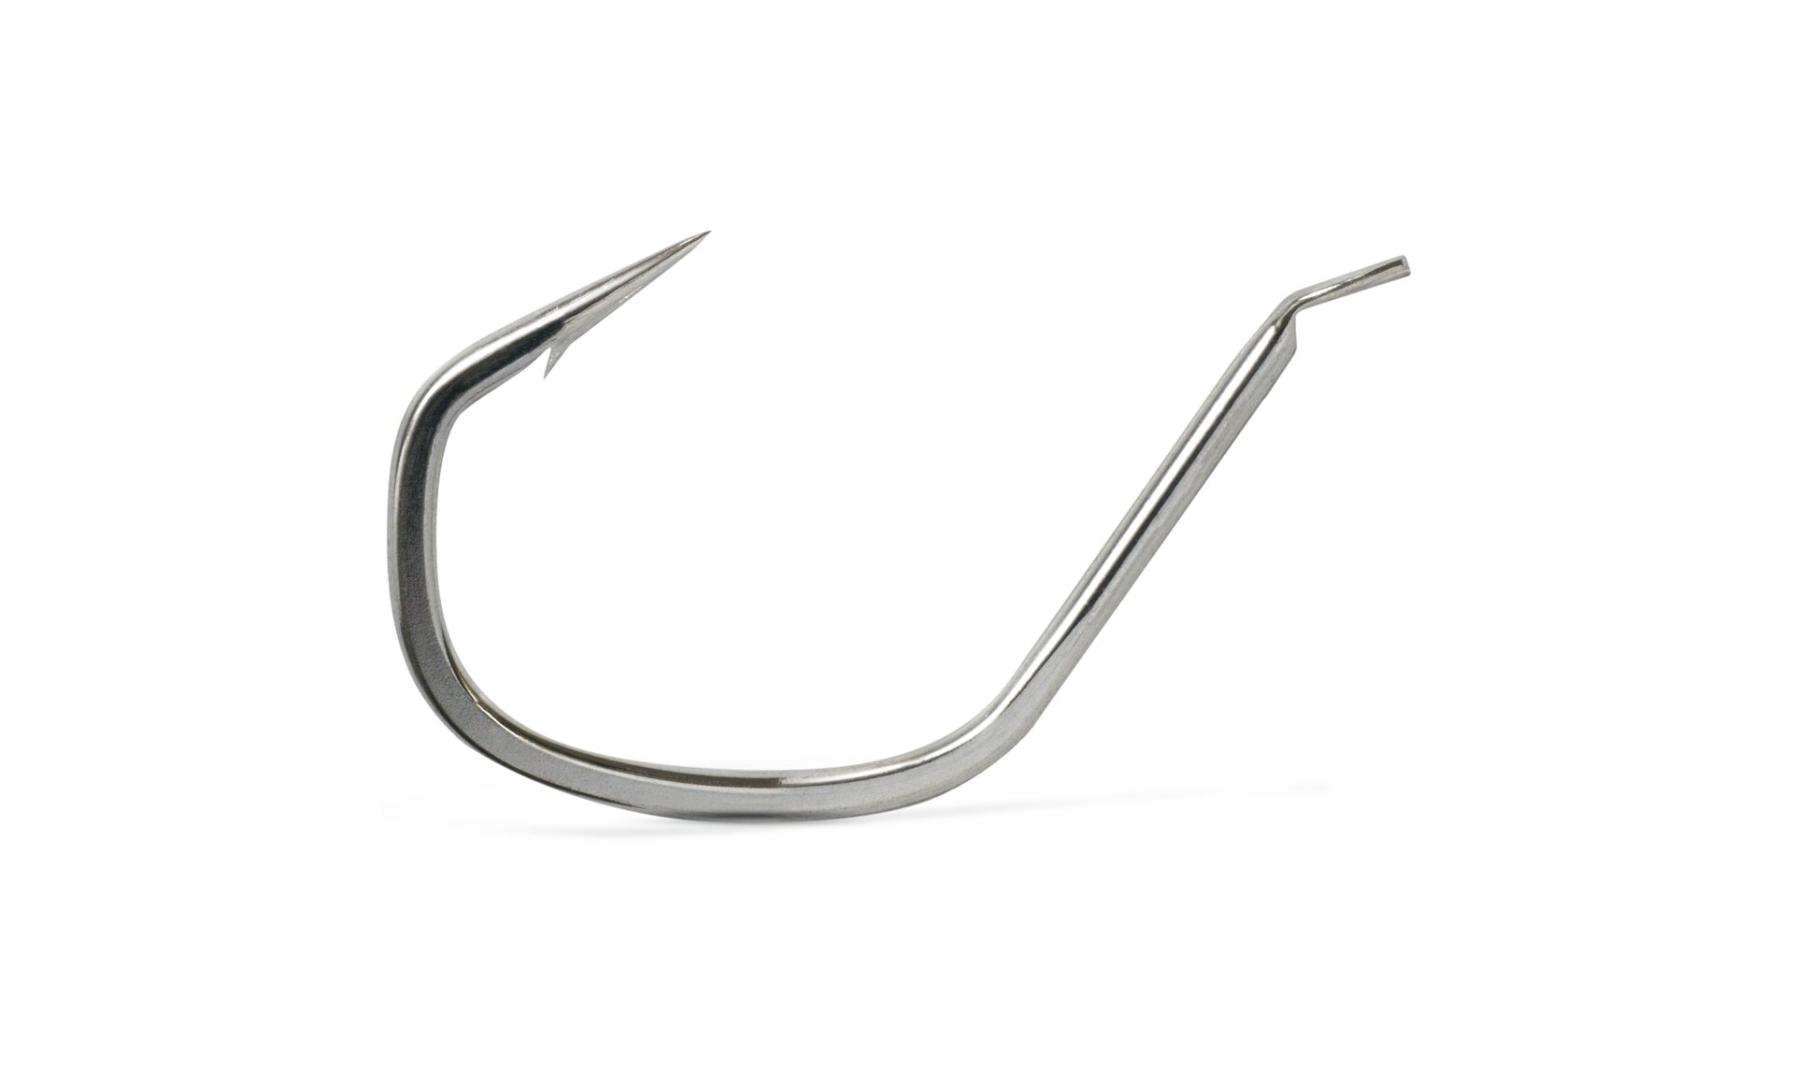 1000 VMC 9131NI Nickel 90 Degree Bend Jig Fishing Hooks Size 2/0